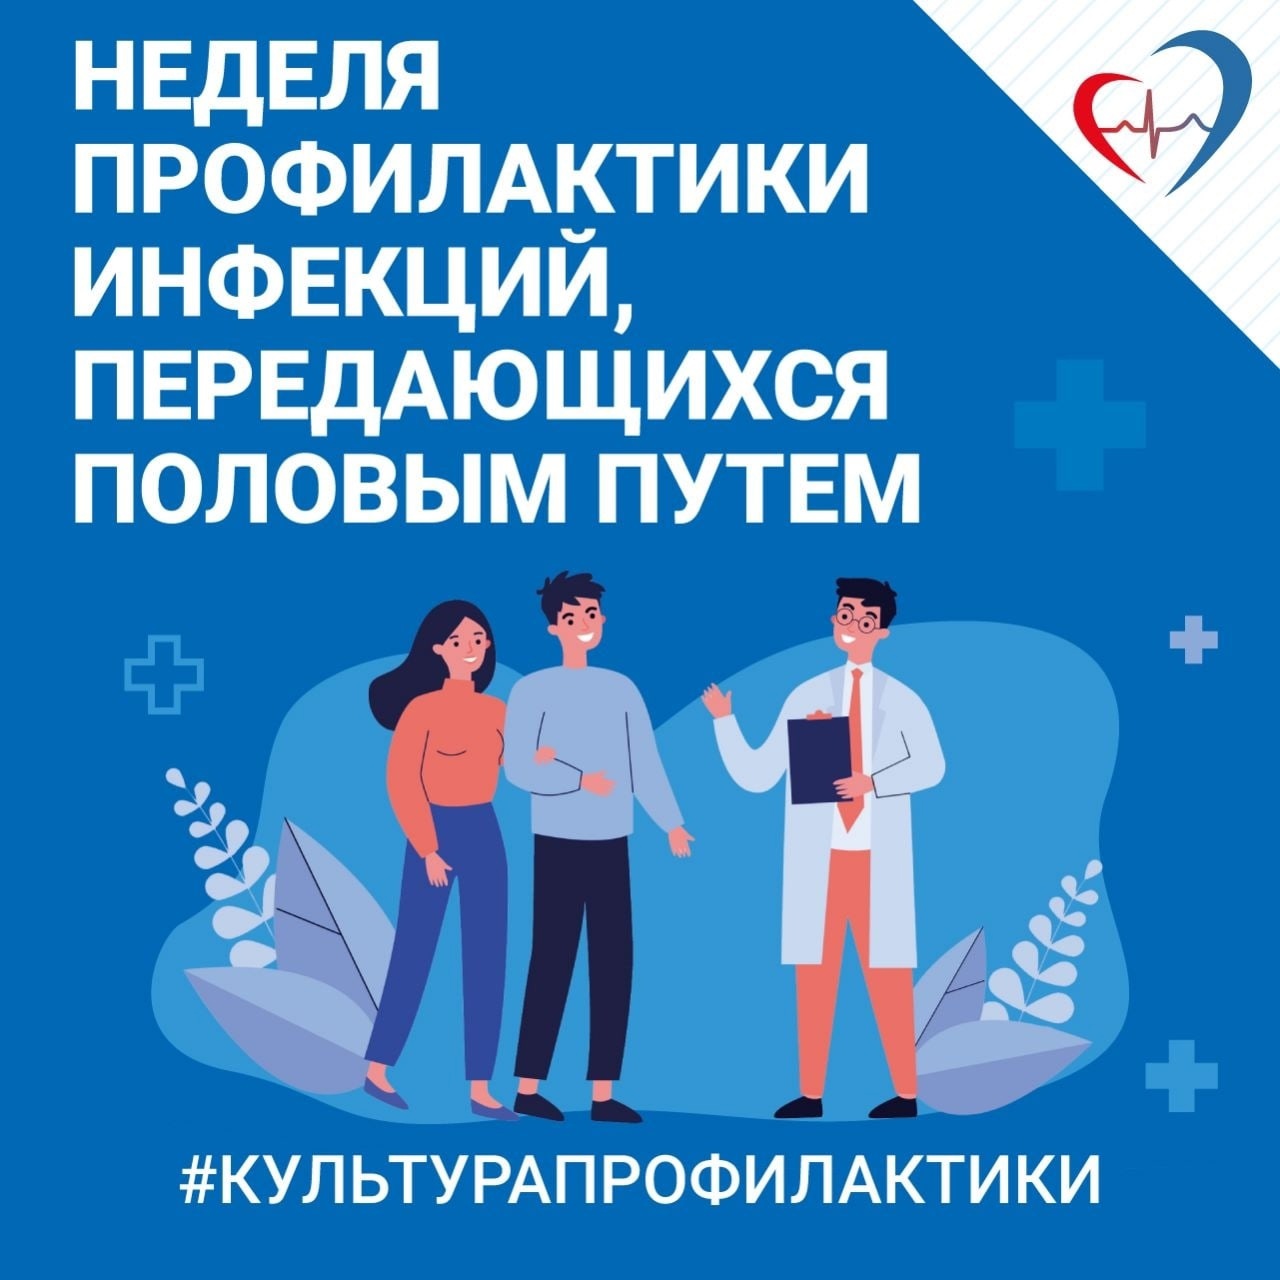 С 29 апреля до 5 мая в Российской Федерации проводится тематическая неделя профилактики инфекций, передающихся половым путем.